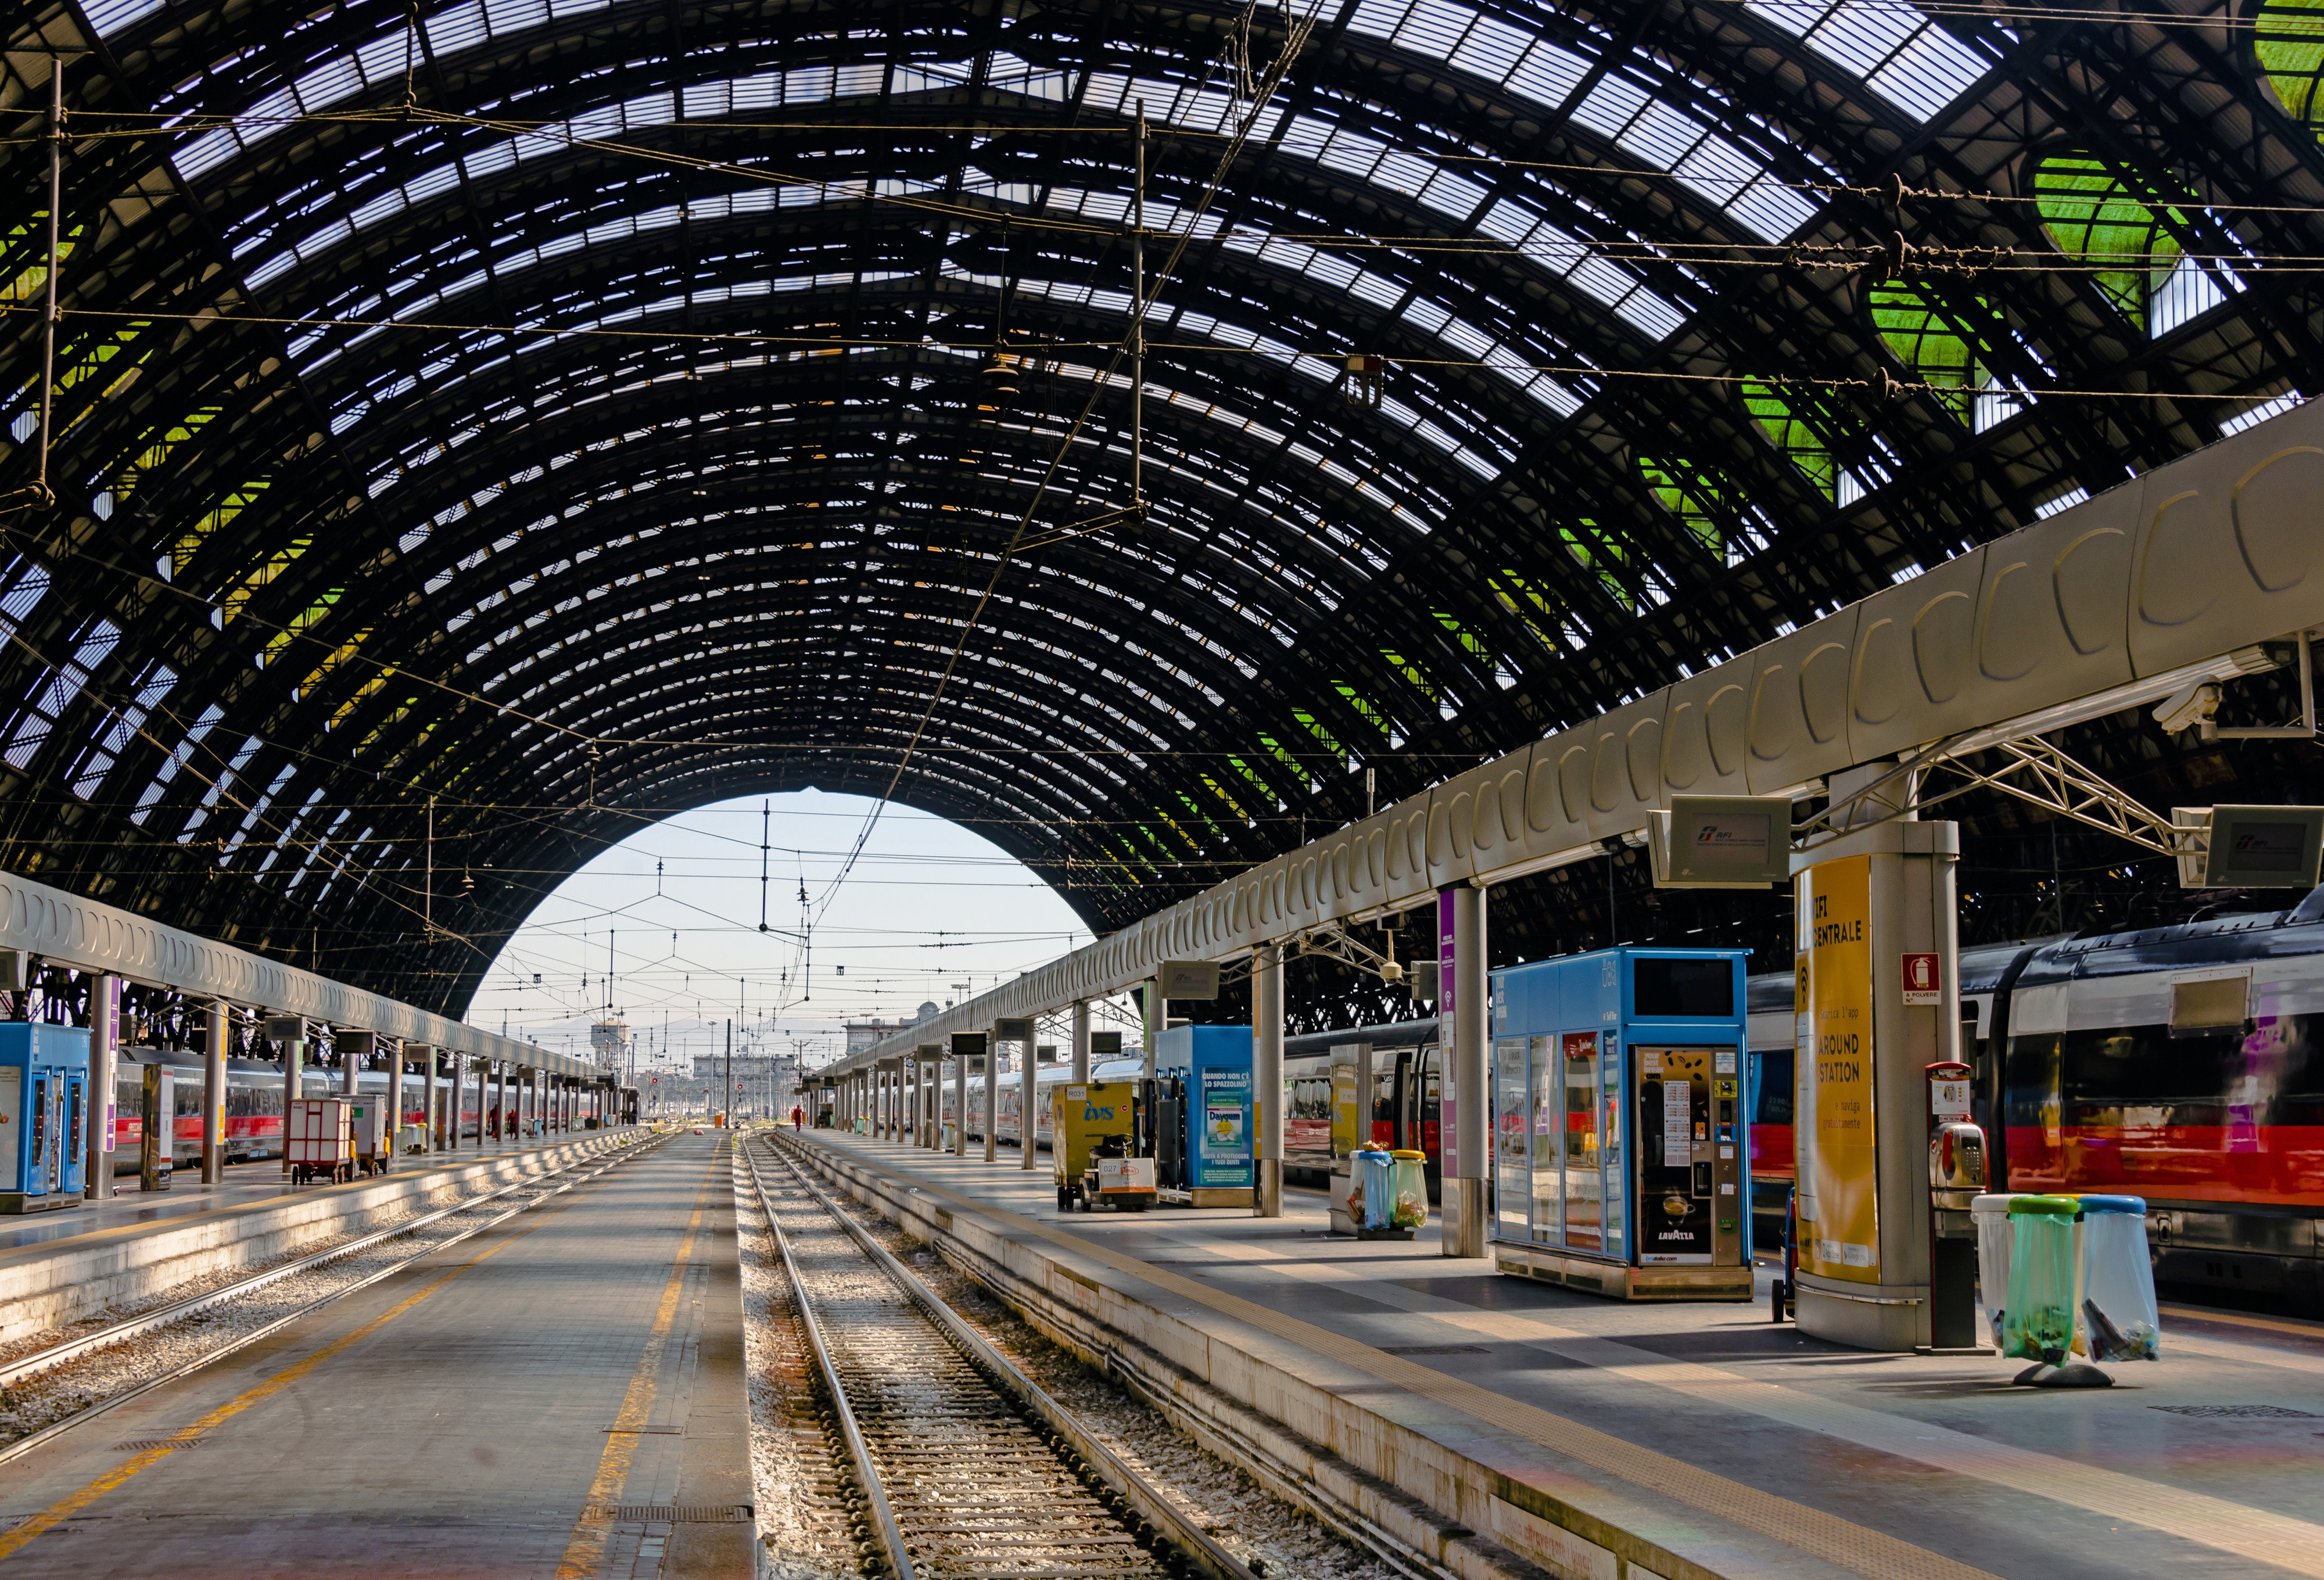 Tracks in MIlano Centrale Stazione trainshed